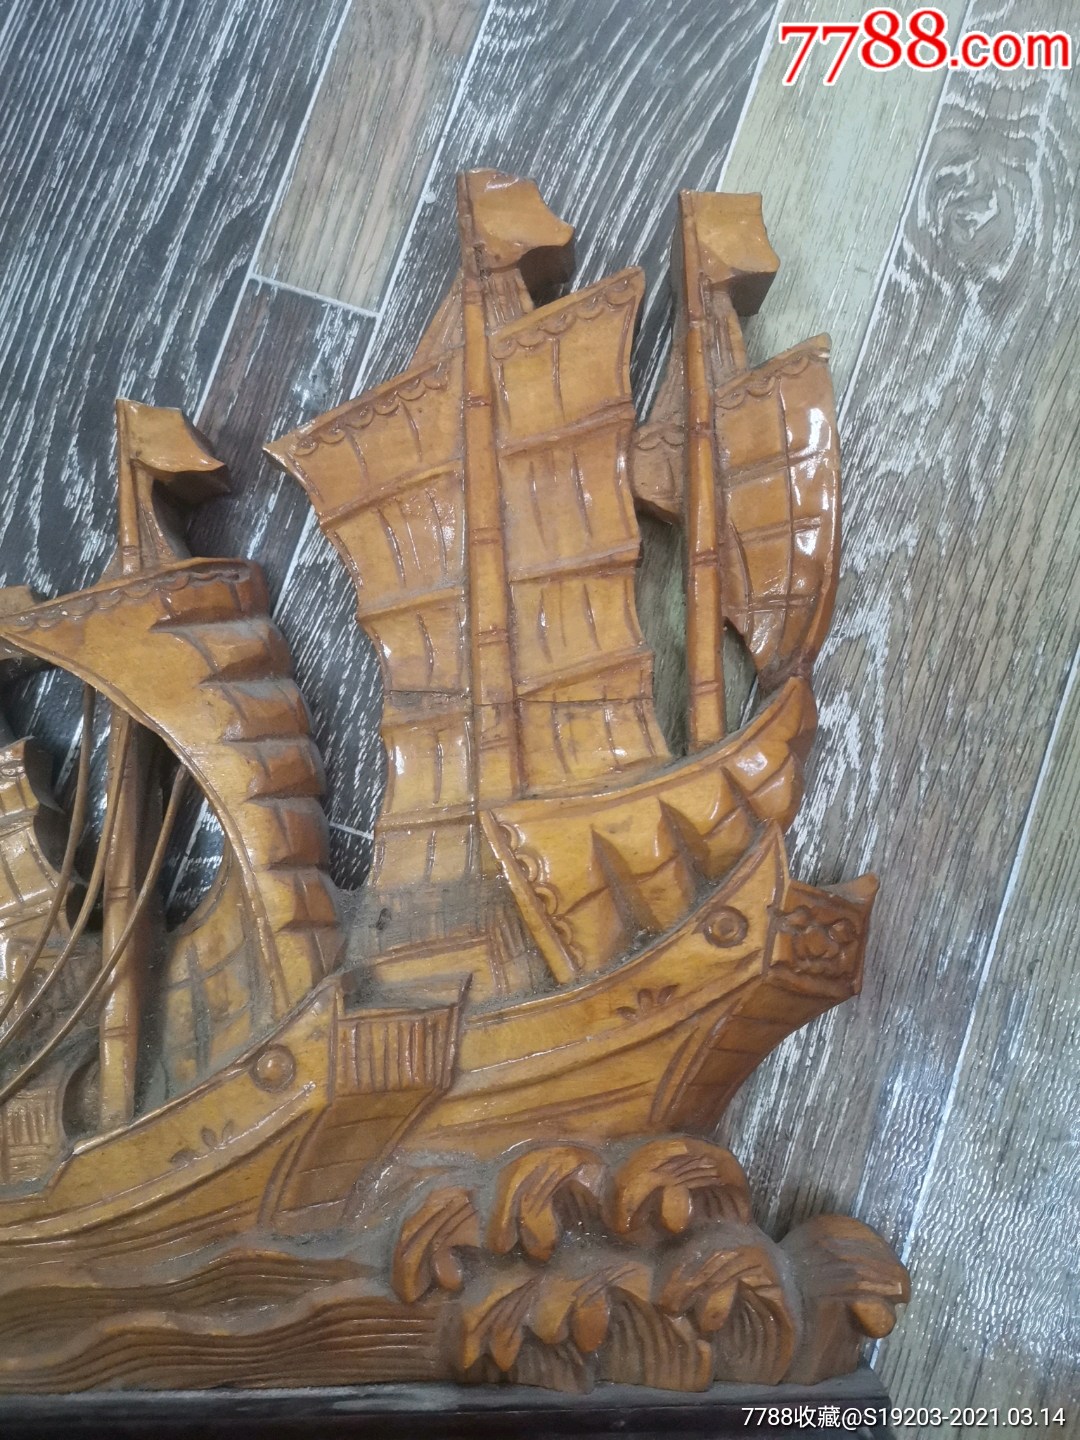 湖北木雕船图片